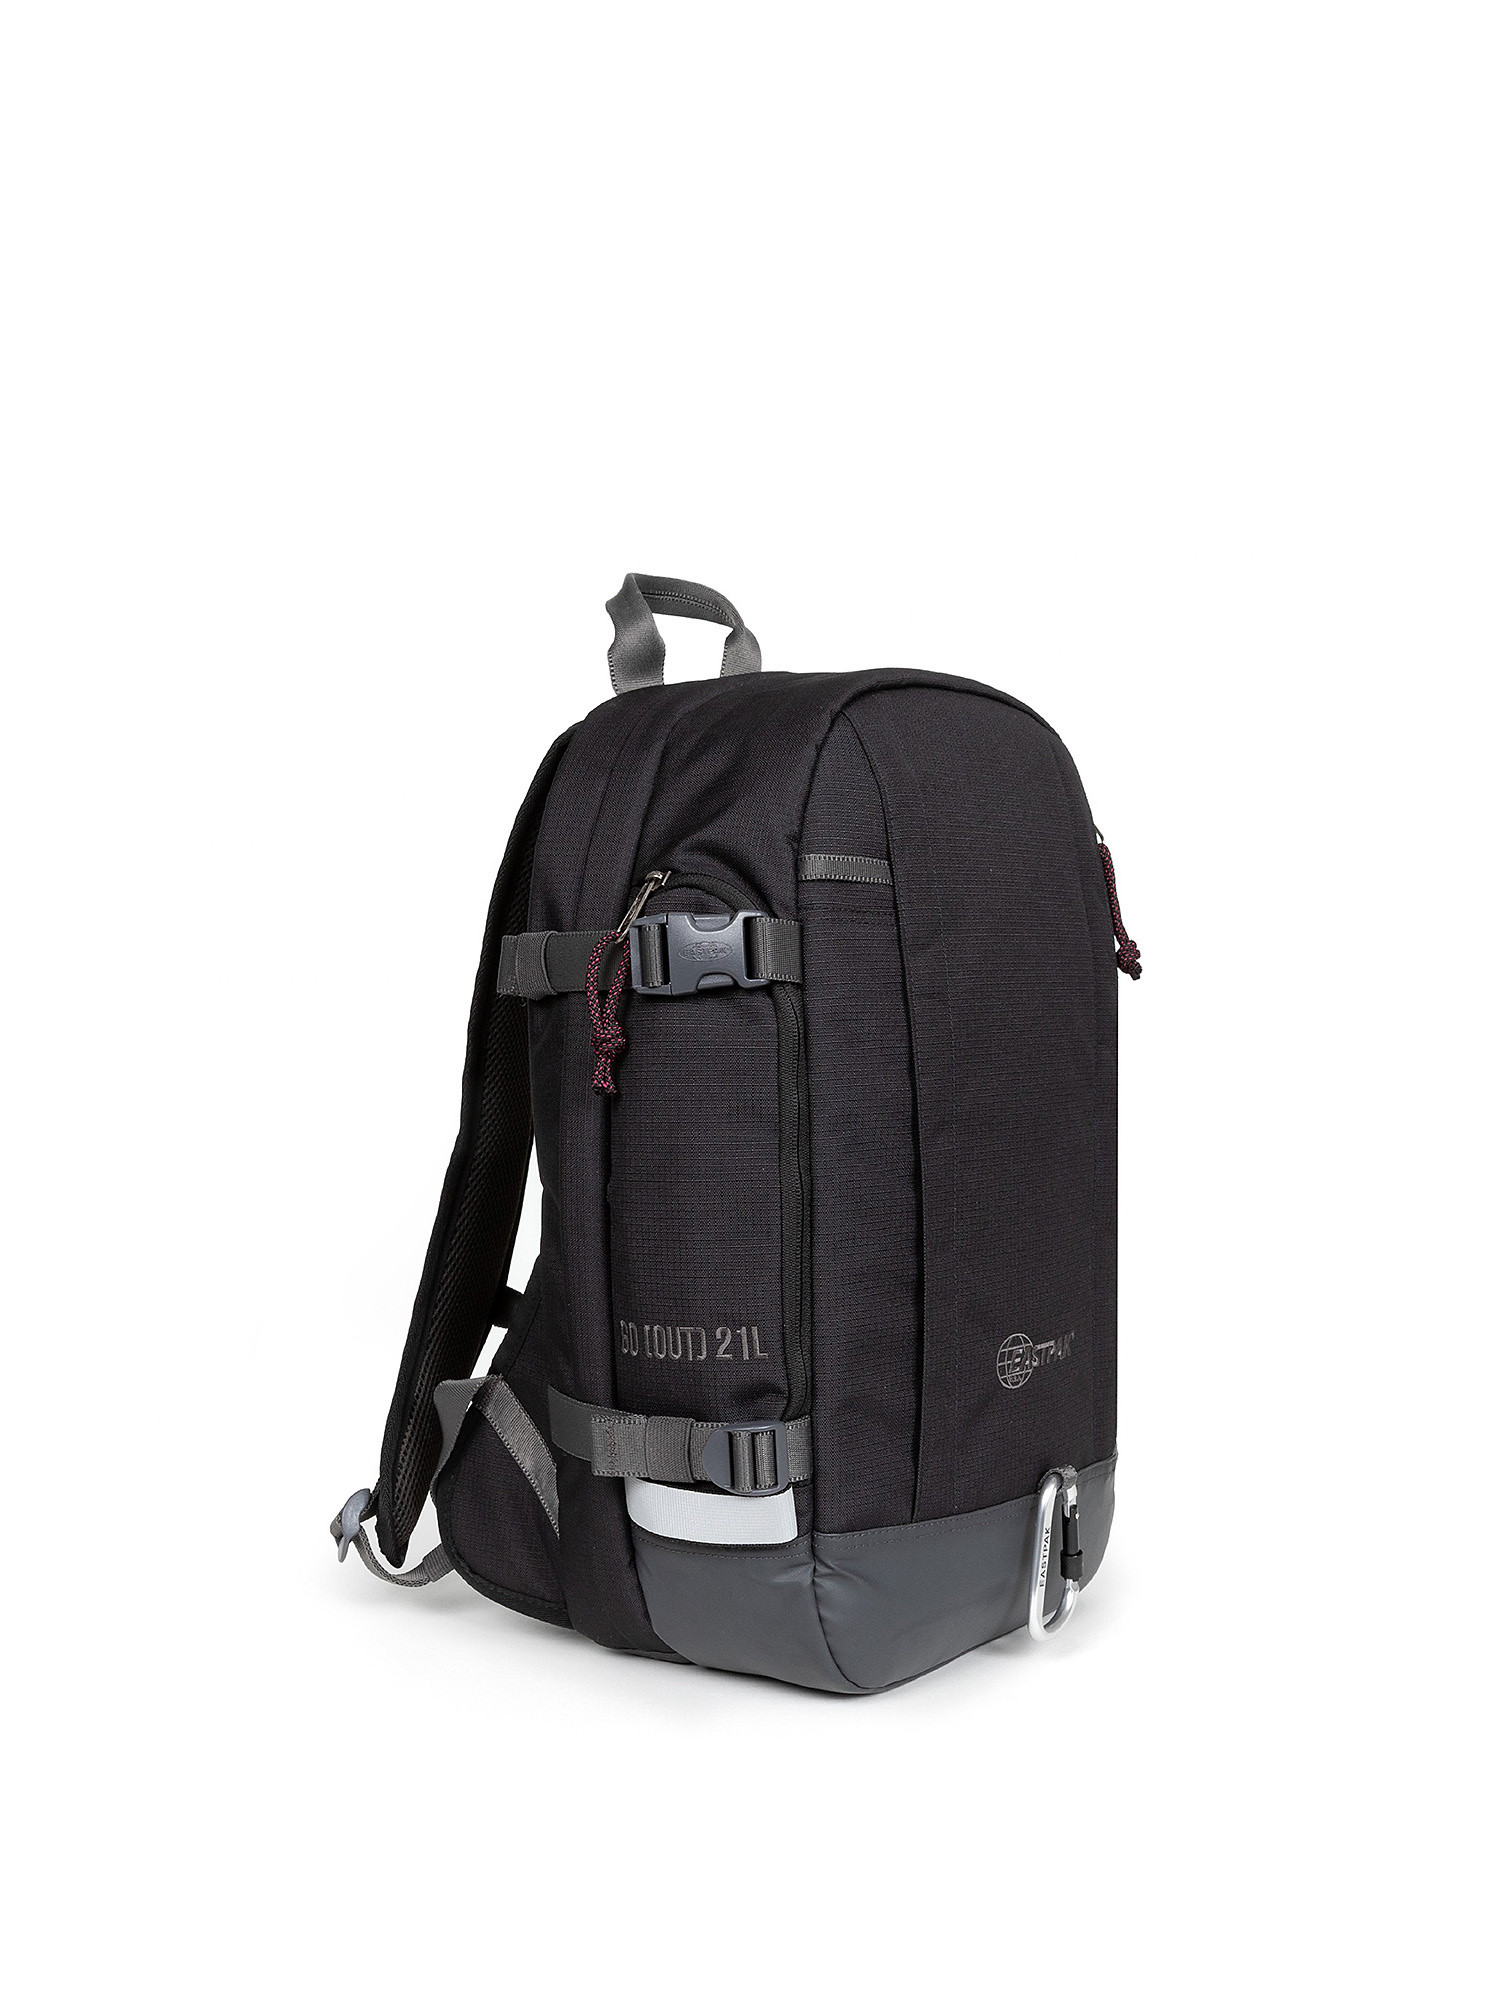 Eastpak - Out Safepack Out Black backpack, Black, large image number 2